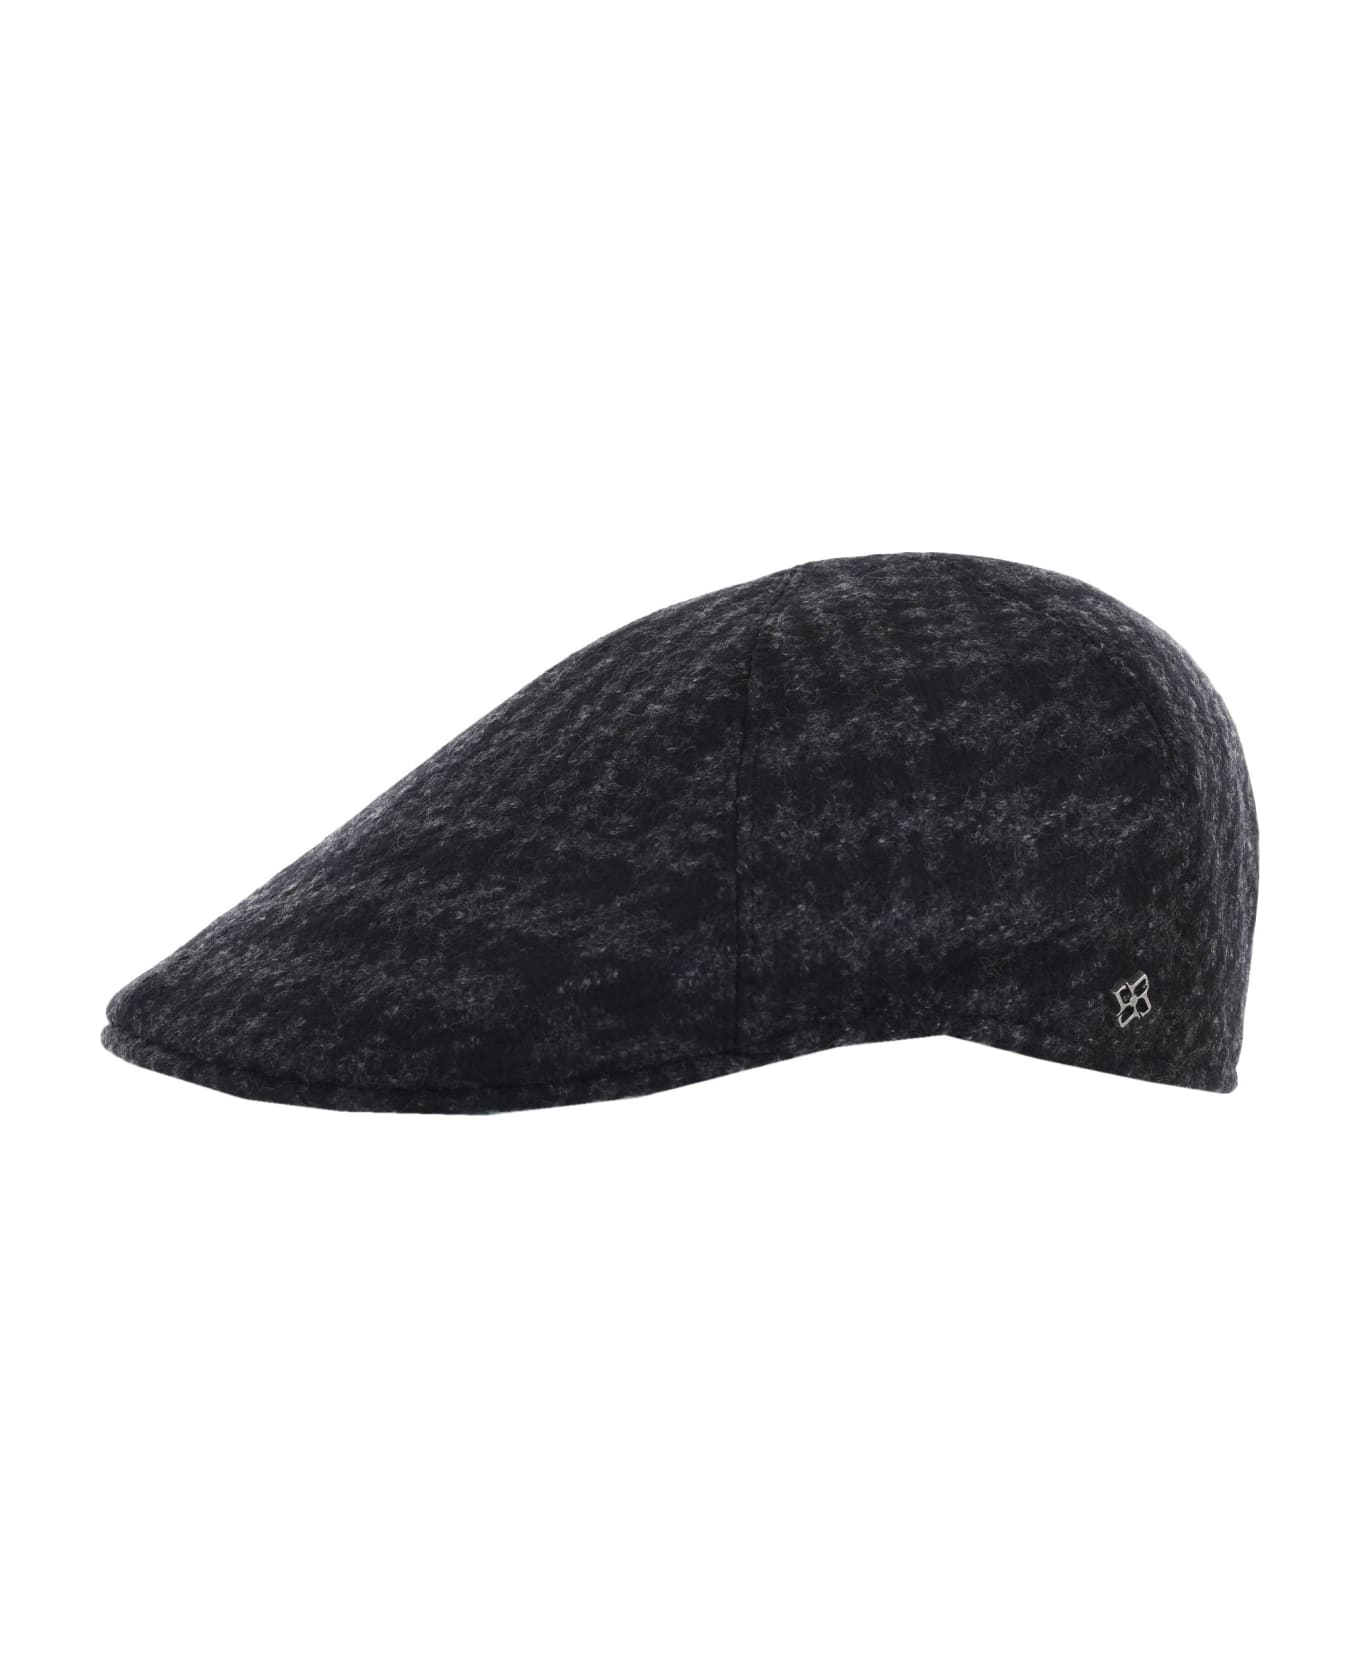 Tagliatore Flat Cap - Nero/grigio scuro 帽子